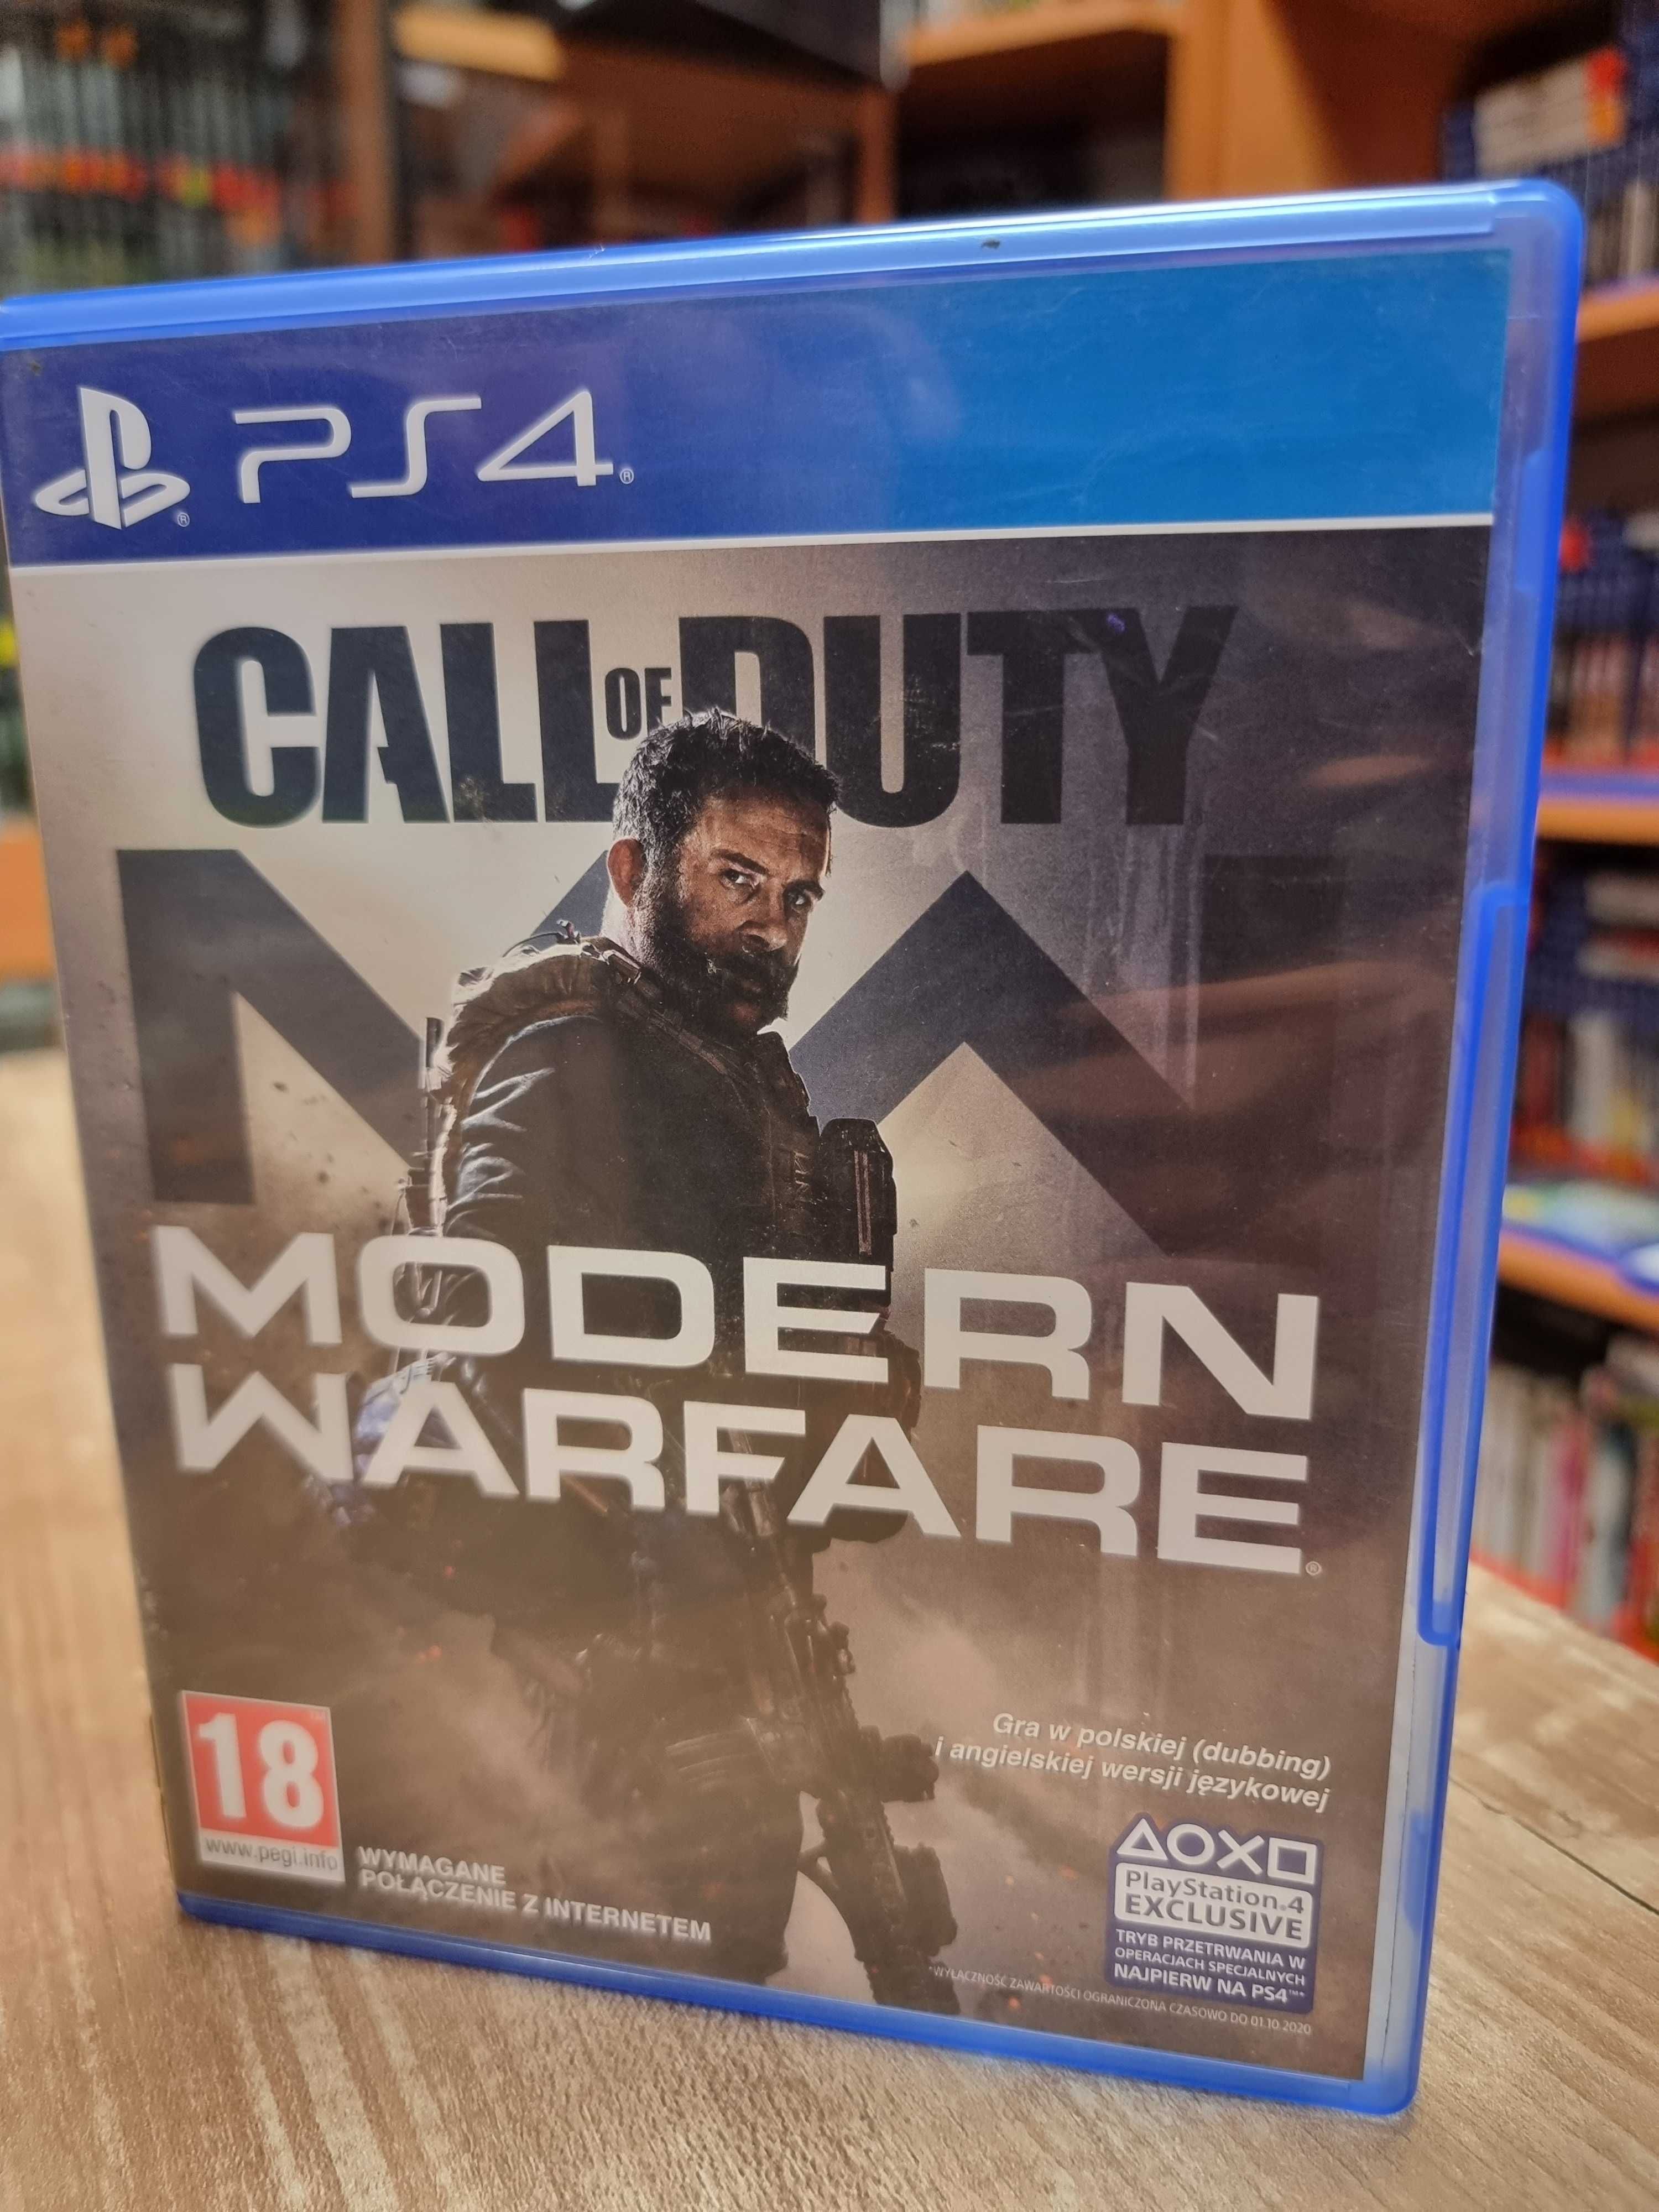 Call of Duty: Modern Warfare PS4, Sklep Wysyłka Wymiana